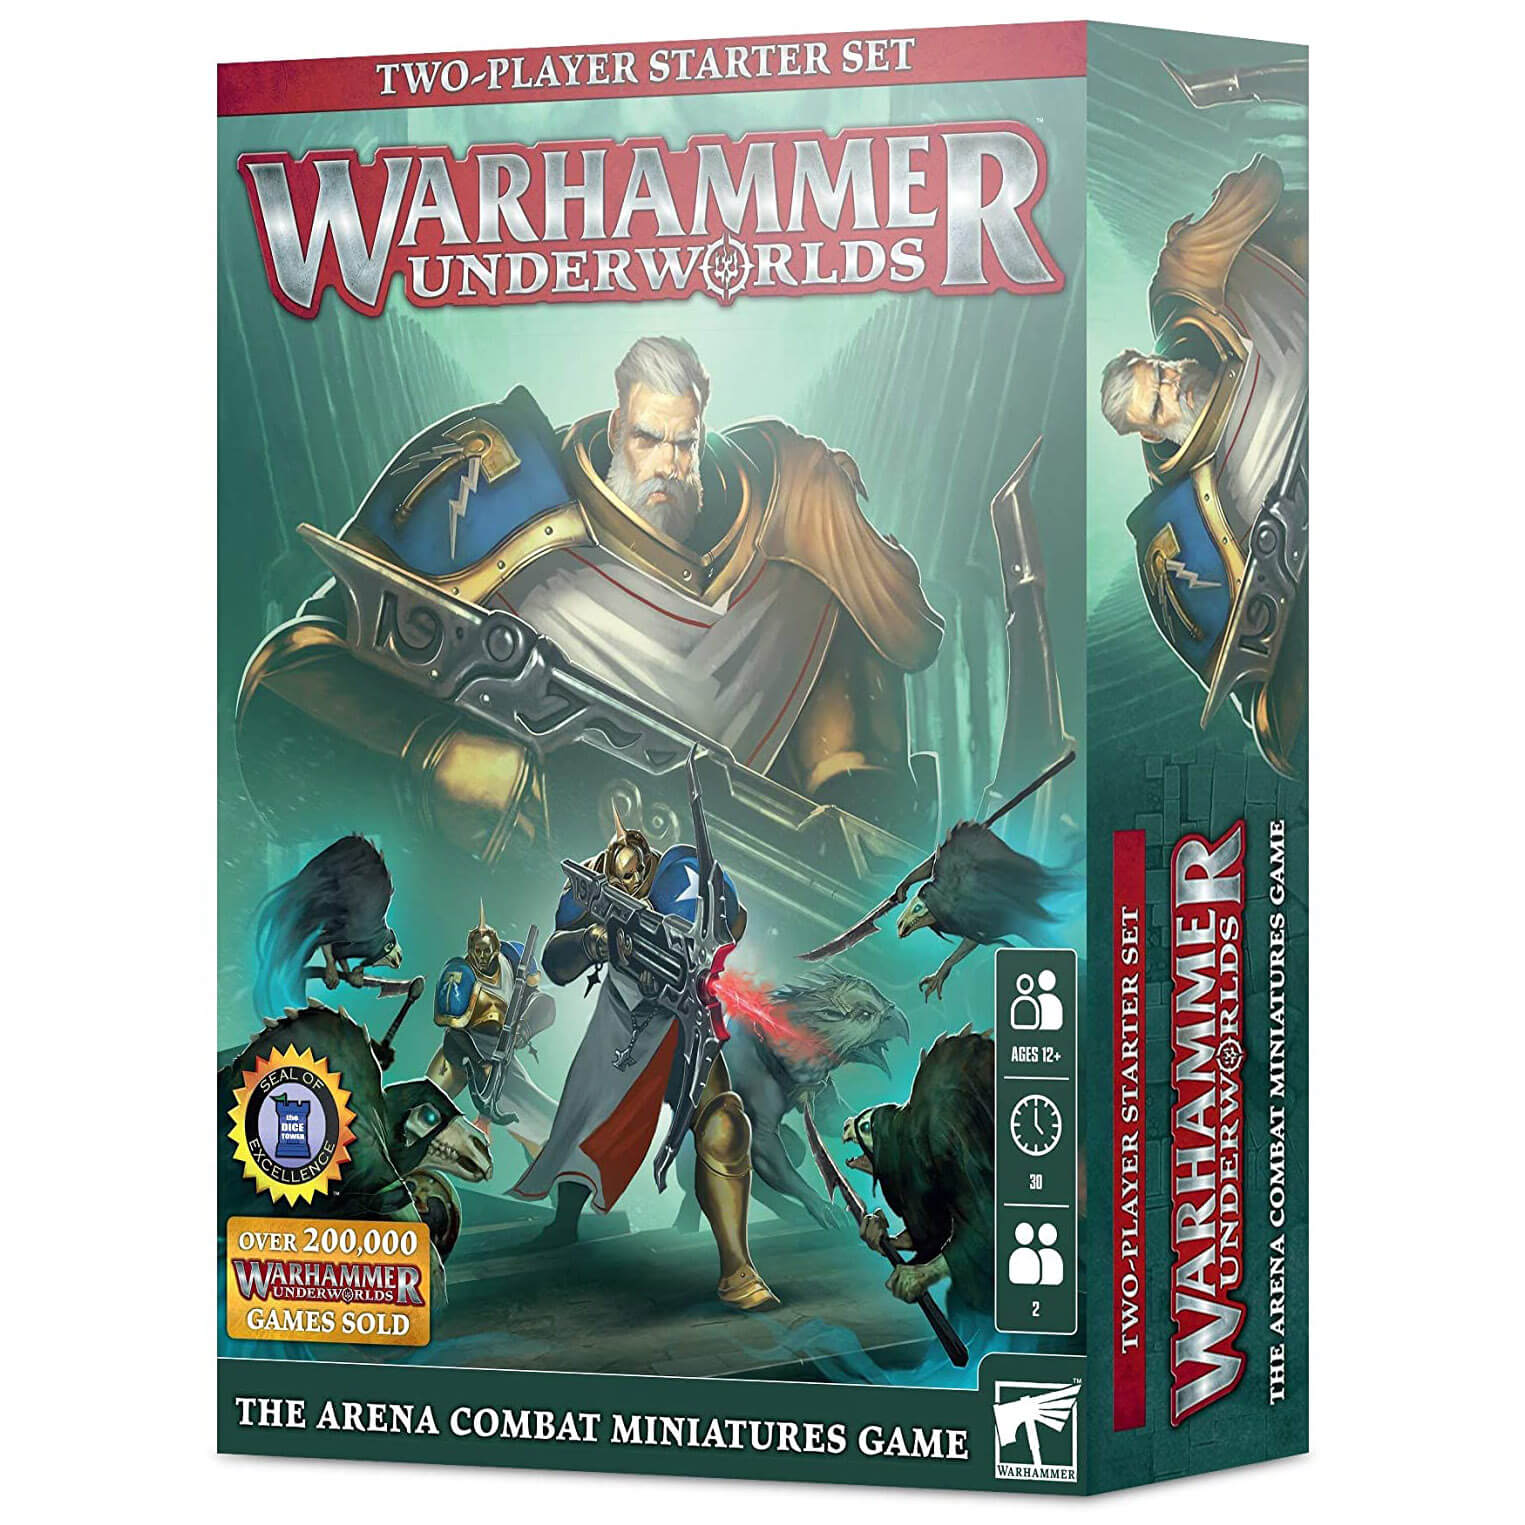 Warhammer Underworlds Two-Player Starter Set